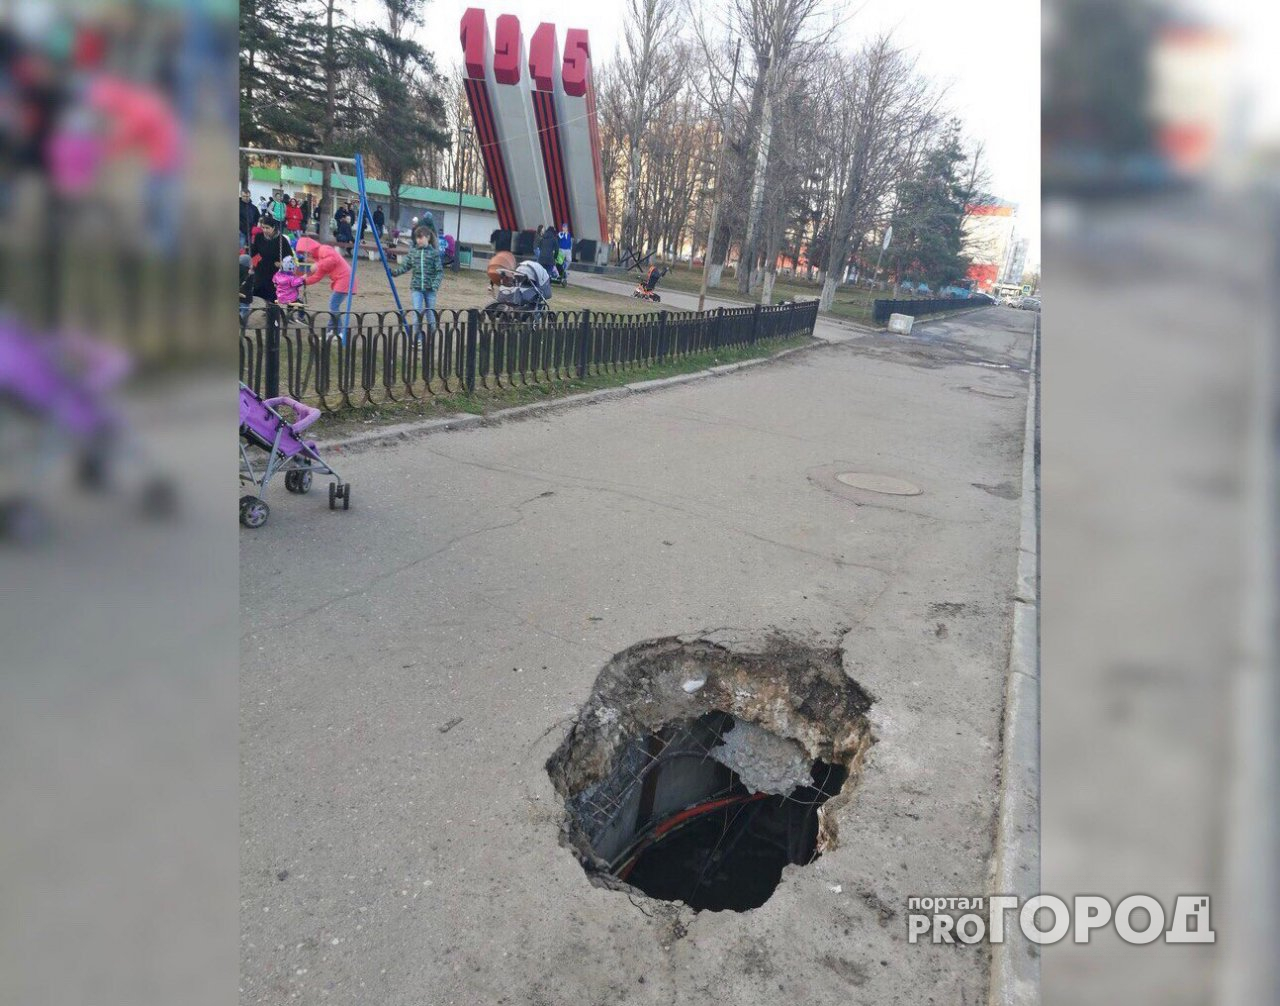 Власти обещали разобраться с провалом асфальта рядом с детской площадкой в Брагино